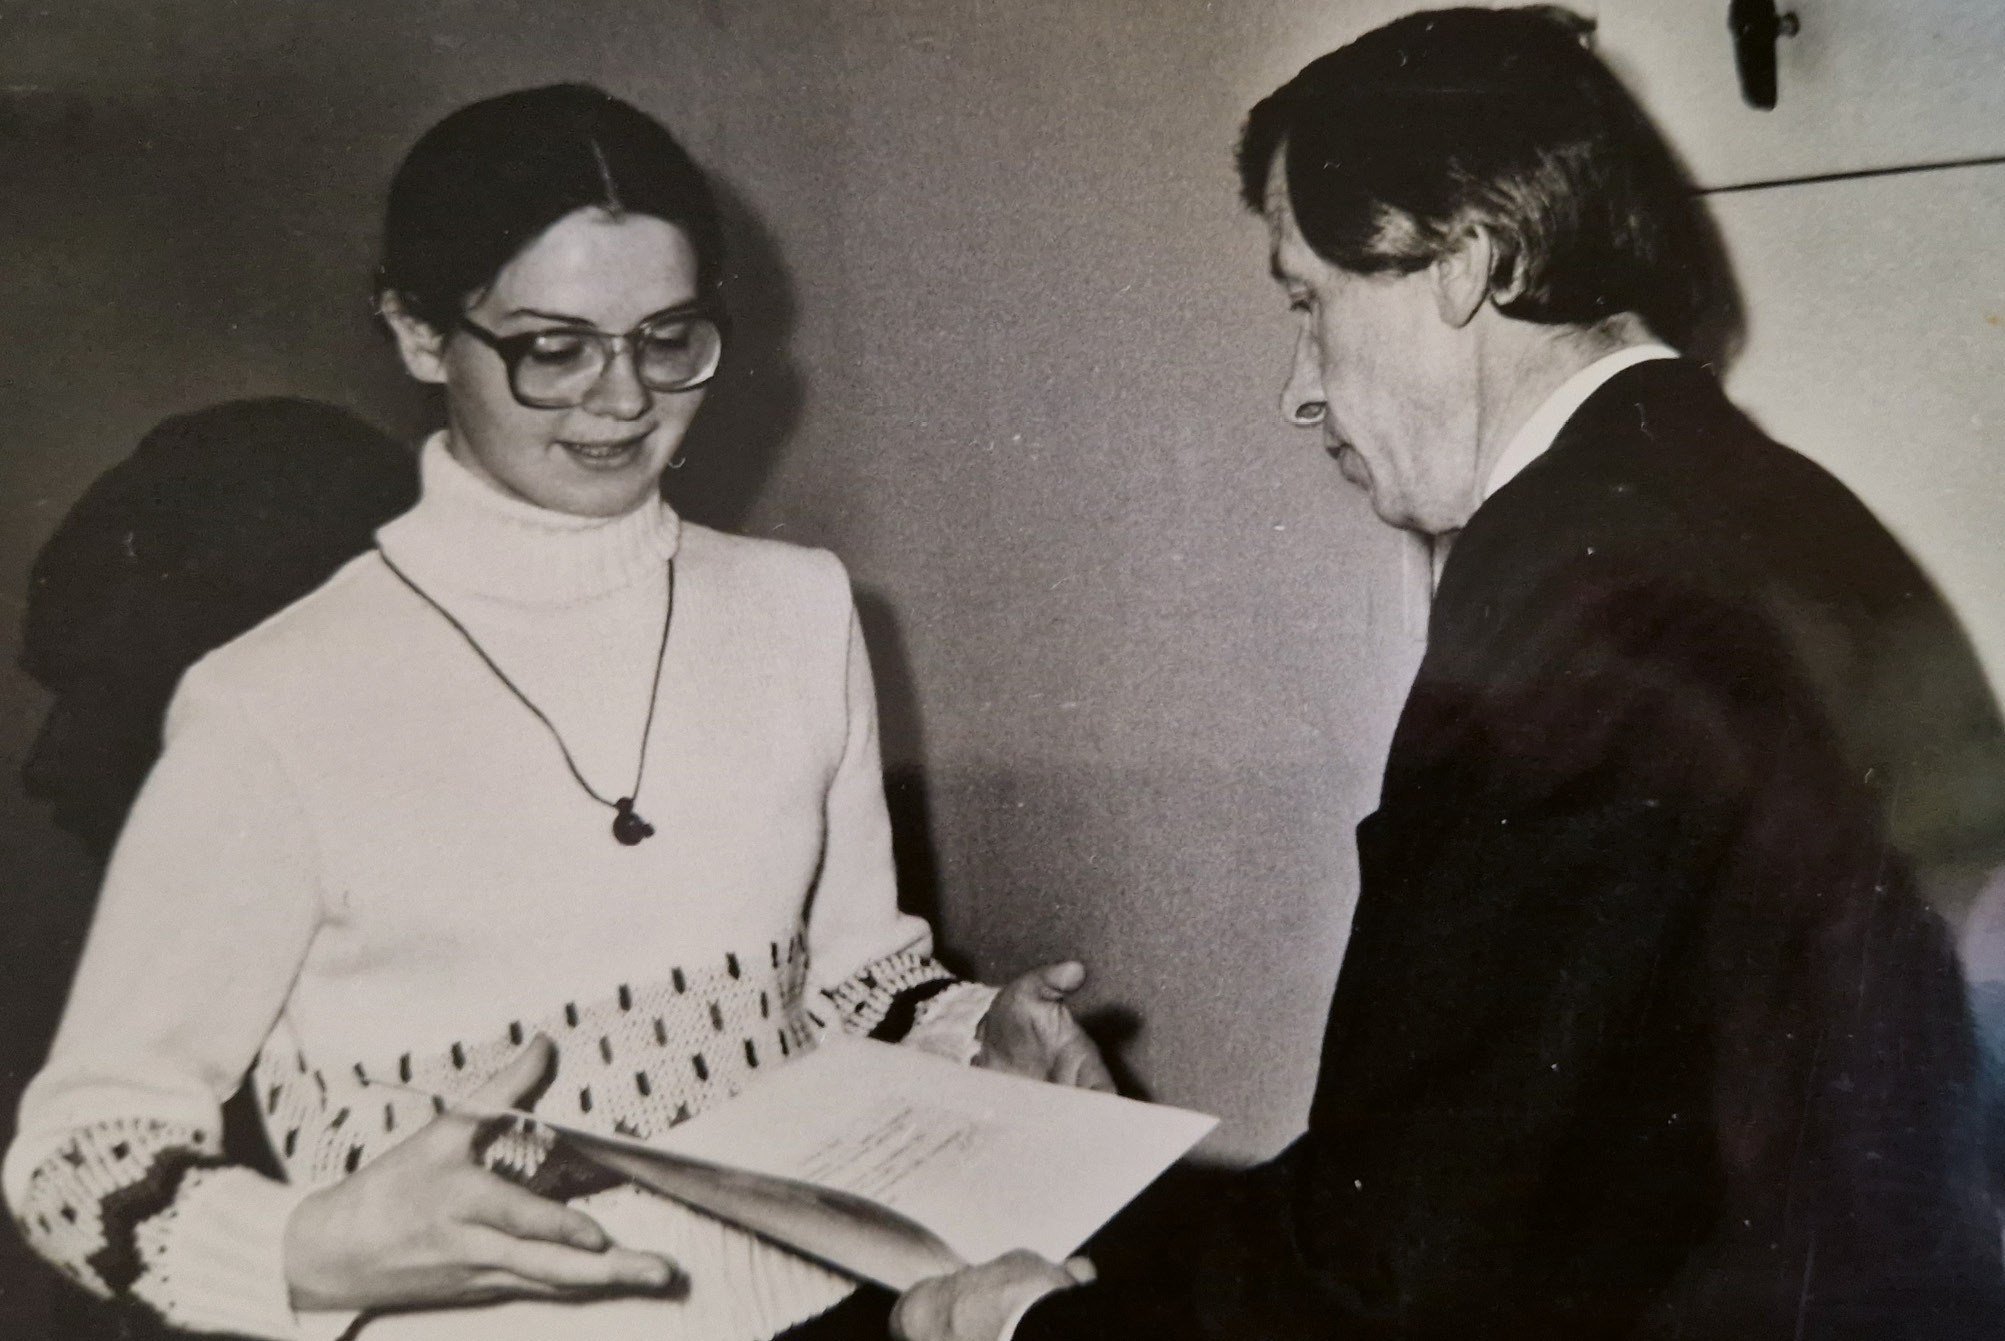 Ceturtā kursa studente. Zinātniskajā konferencē, saņemot diplomu no prof. Jura Lejas, 1984. gads